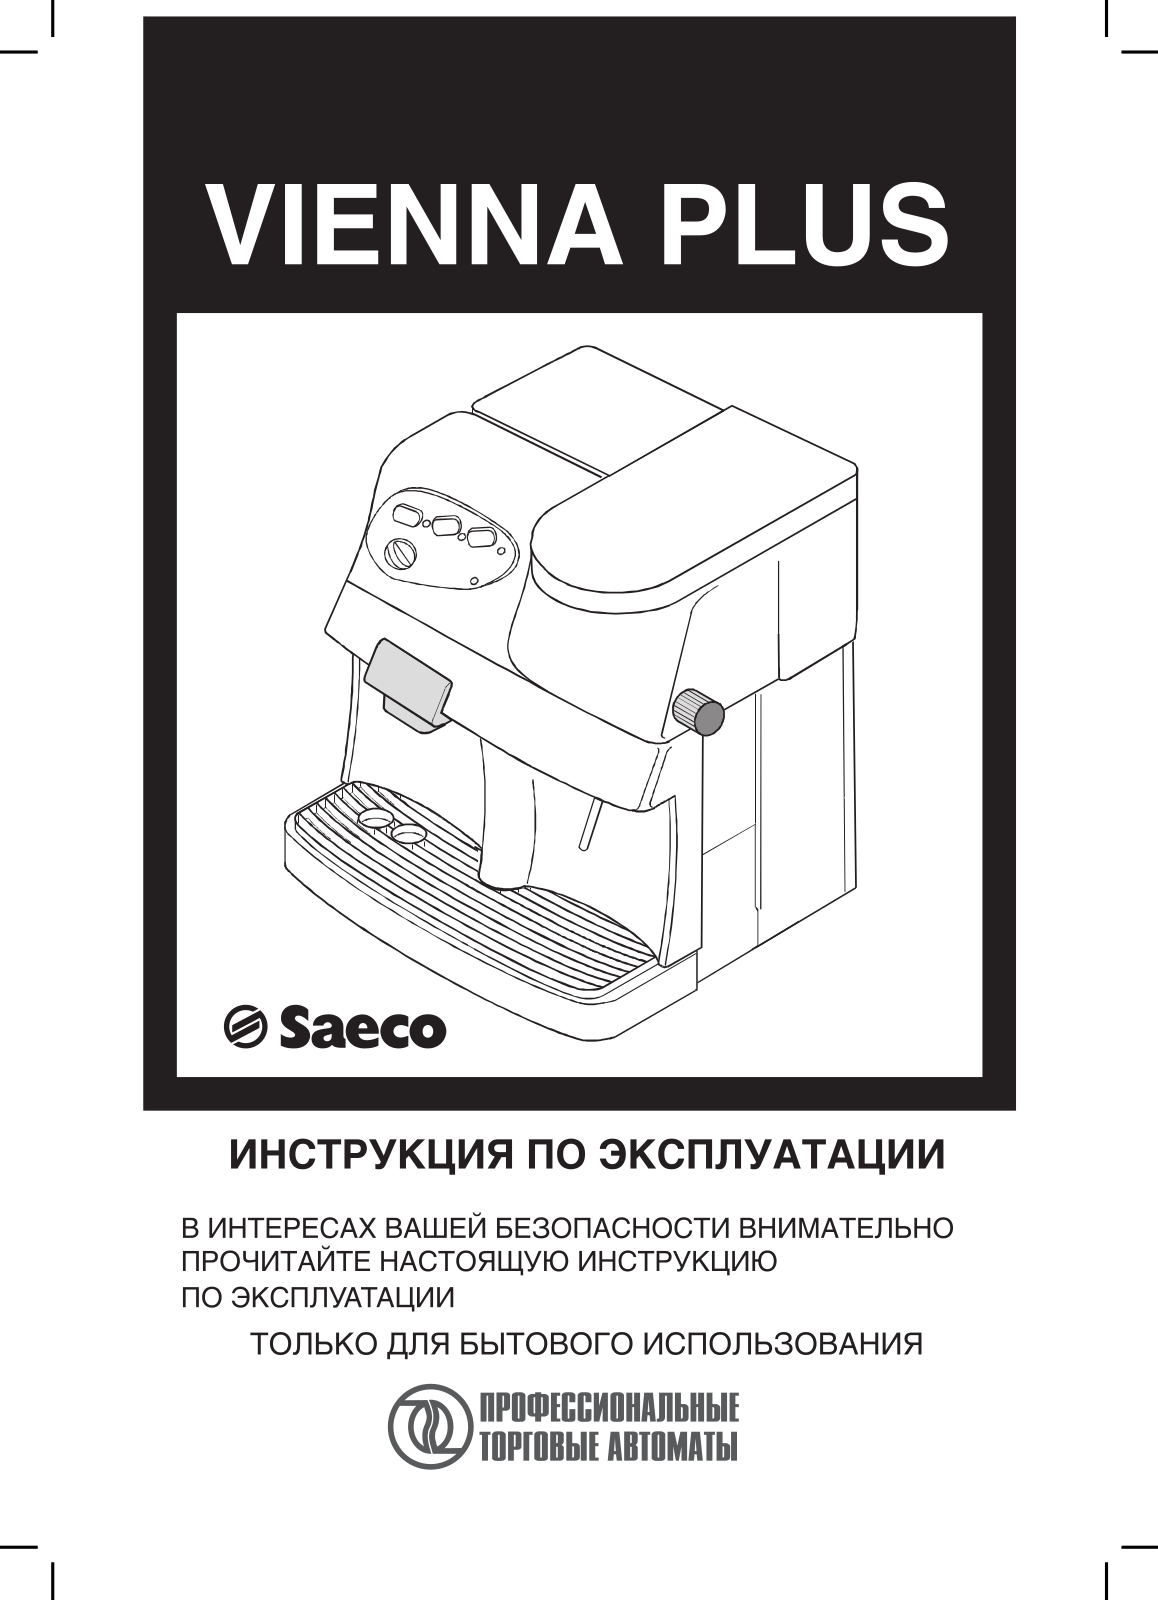 SAECO VIENNA PLUS User Manual